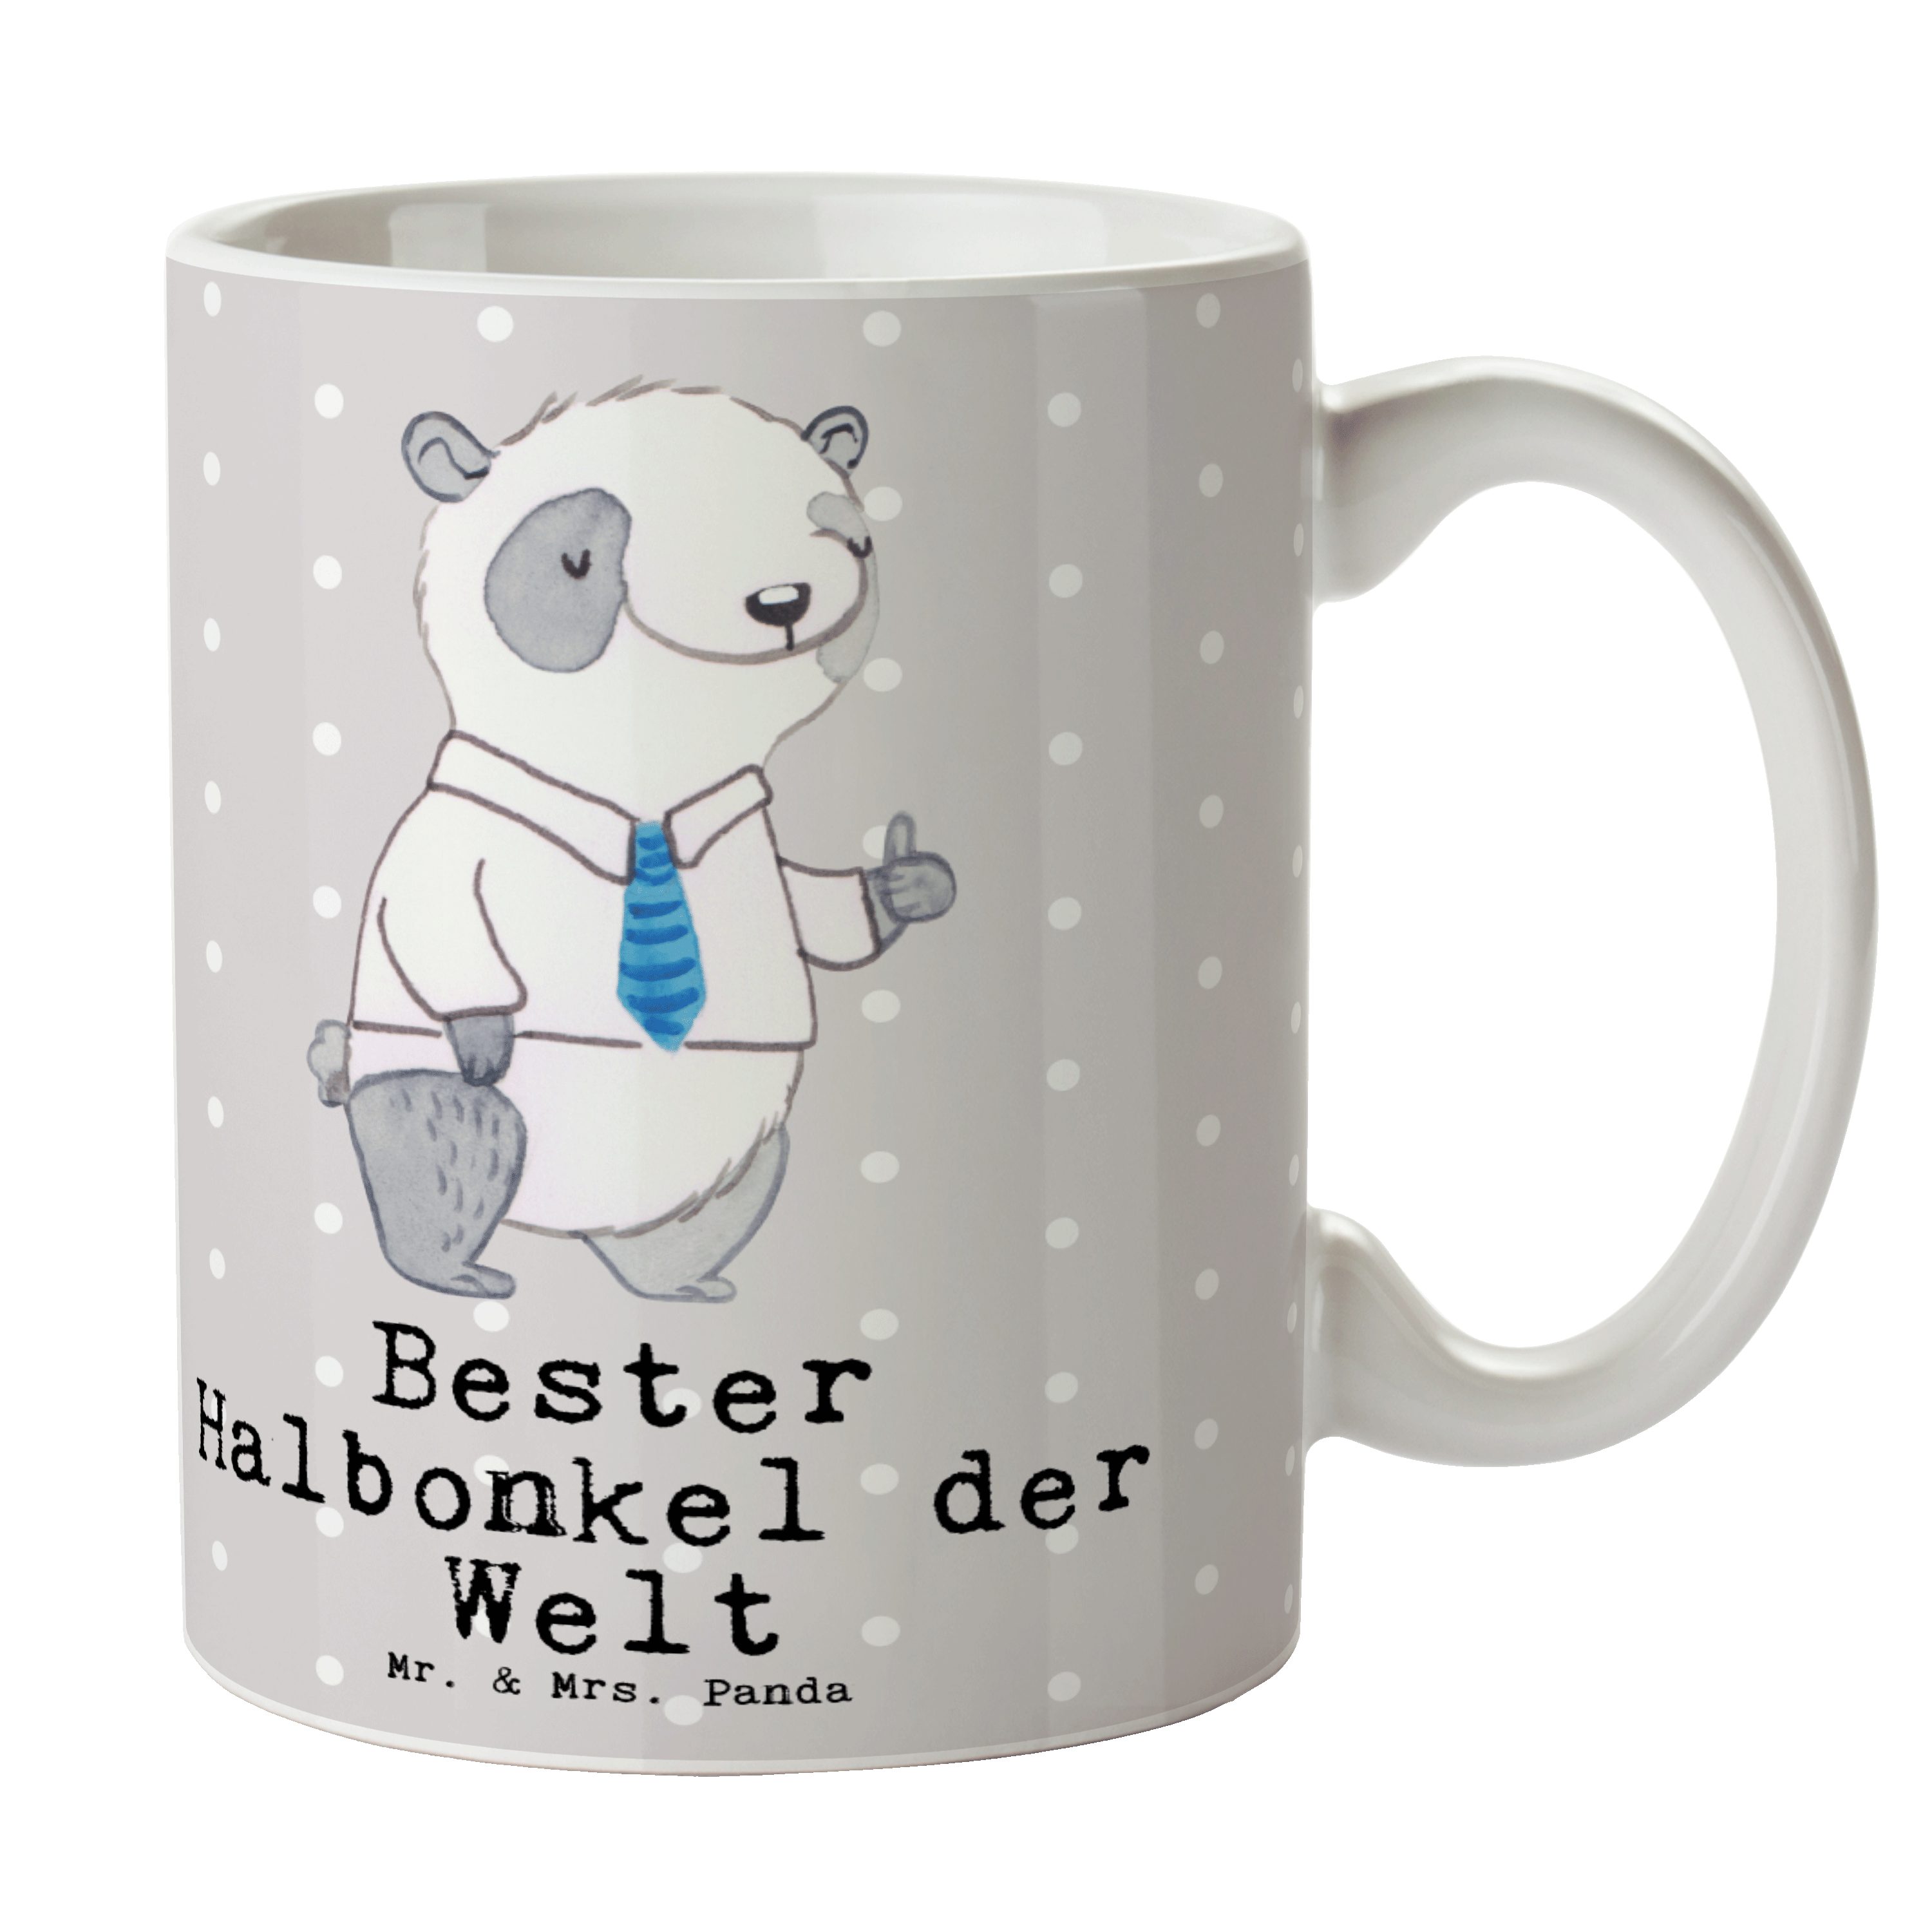 Mr. & Mrs. Panda Tasse Panda Bester Halbonkel der Welt - Grau Pastell - Geschenk, Kleinigkei, Keramik